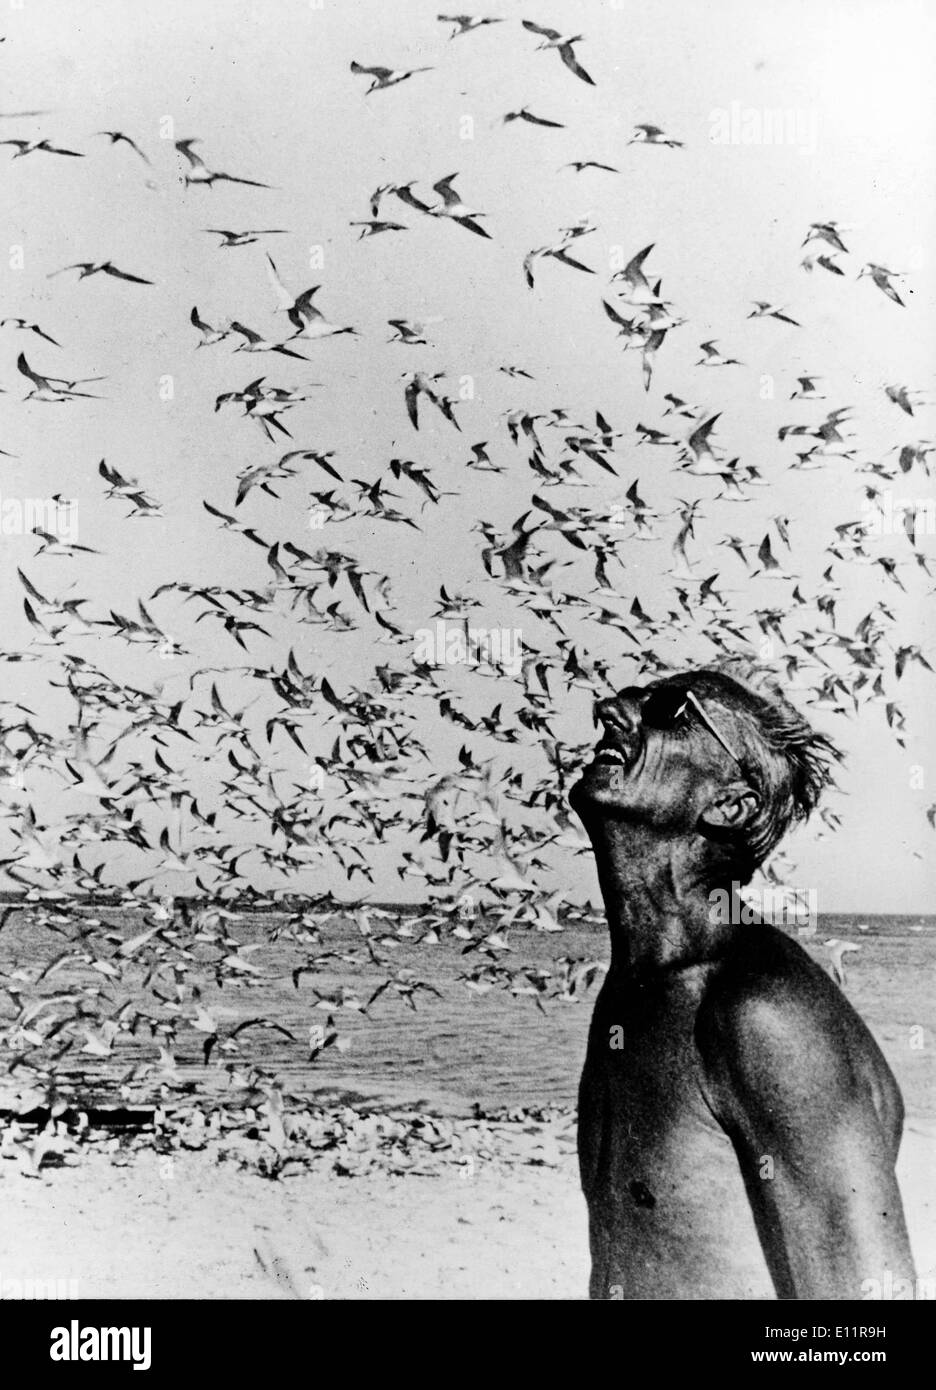 Jan 01, 1980 - desconocido - (Foto de archivo, c1970's, ubicación desconocida) Jacques Yves Cousteau fue un oficial naval francés, explorador, ecologista, cineasta, científico, fotógrafo e investigador que estudió el mar y todas las formas de vida acuática. Él co-desarrollado el aqua-lung, pionera en la conservación de los recursos marinos. Foto: Jacques Yves Cousteau y una bandada de gaviotas. Foto de stock